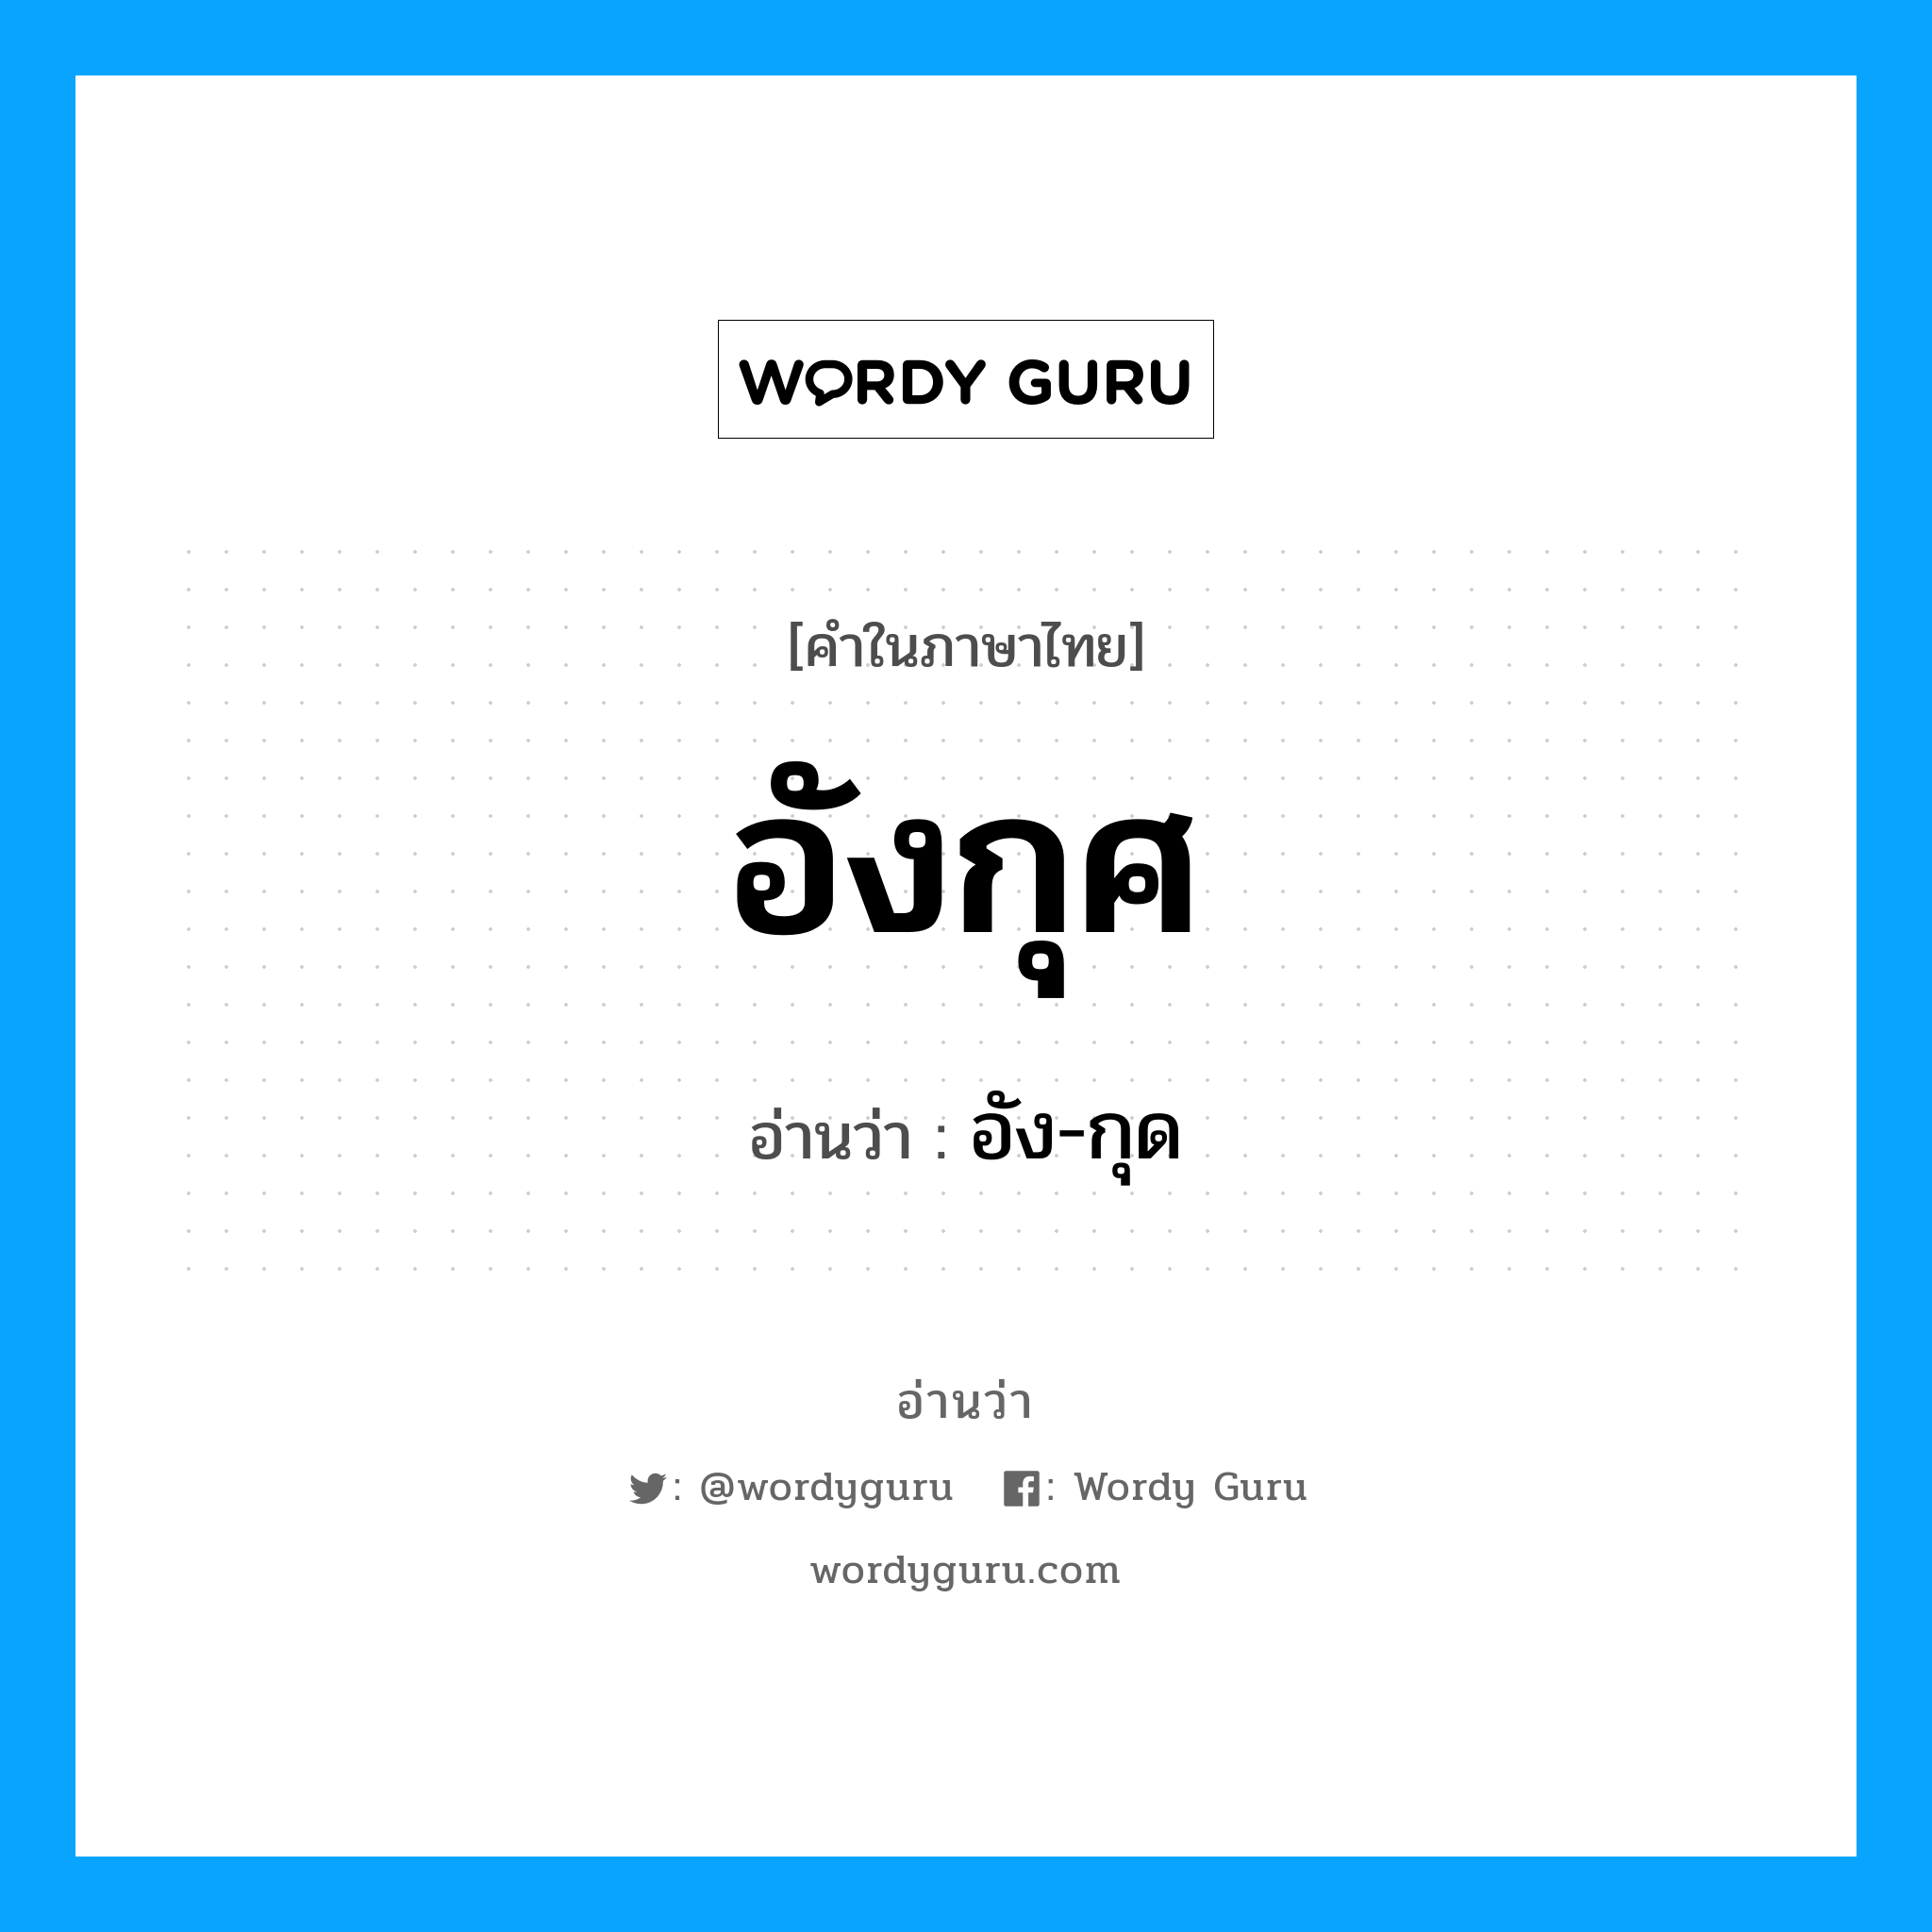 อัง-กุด เป็นคำอ่านของคำไหน?, คำในภาษาไทย อัง-กุด อ่านว่า อังกุศ